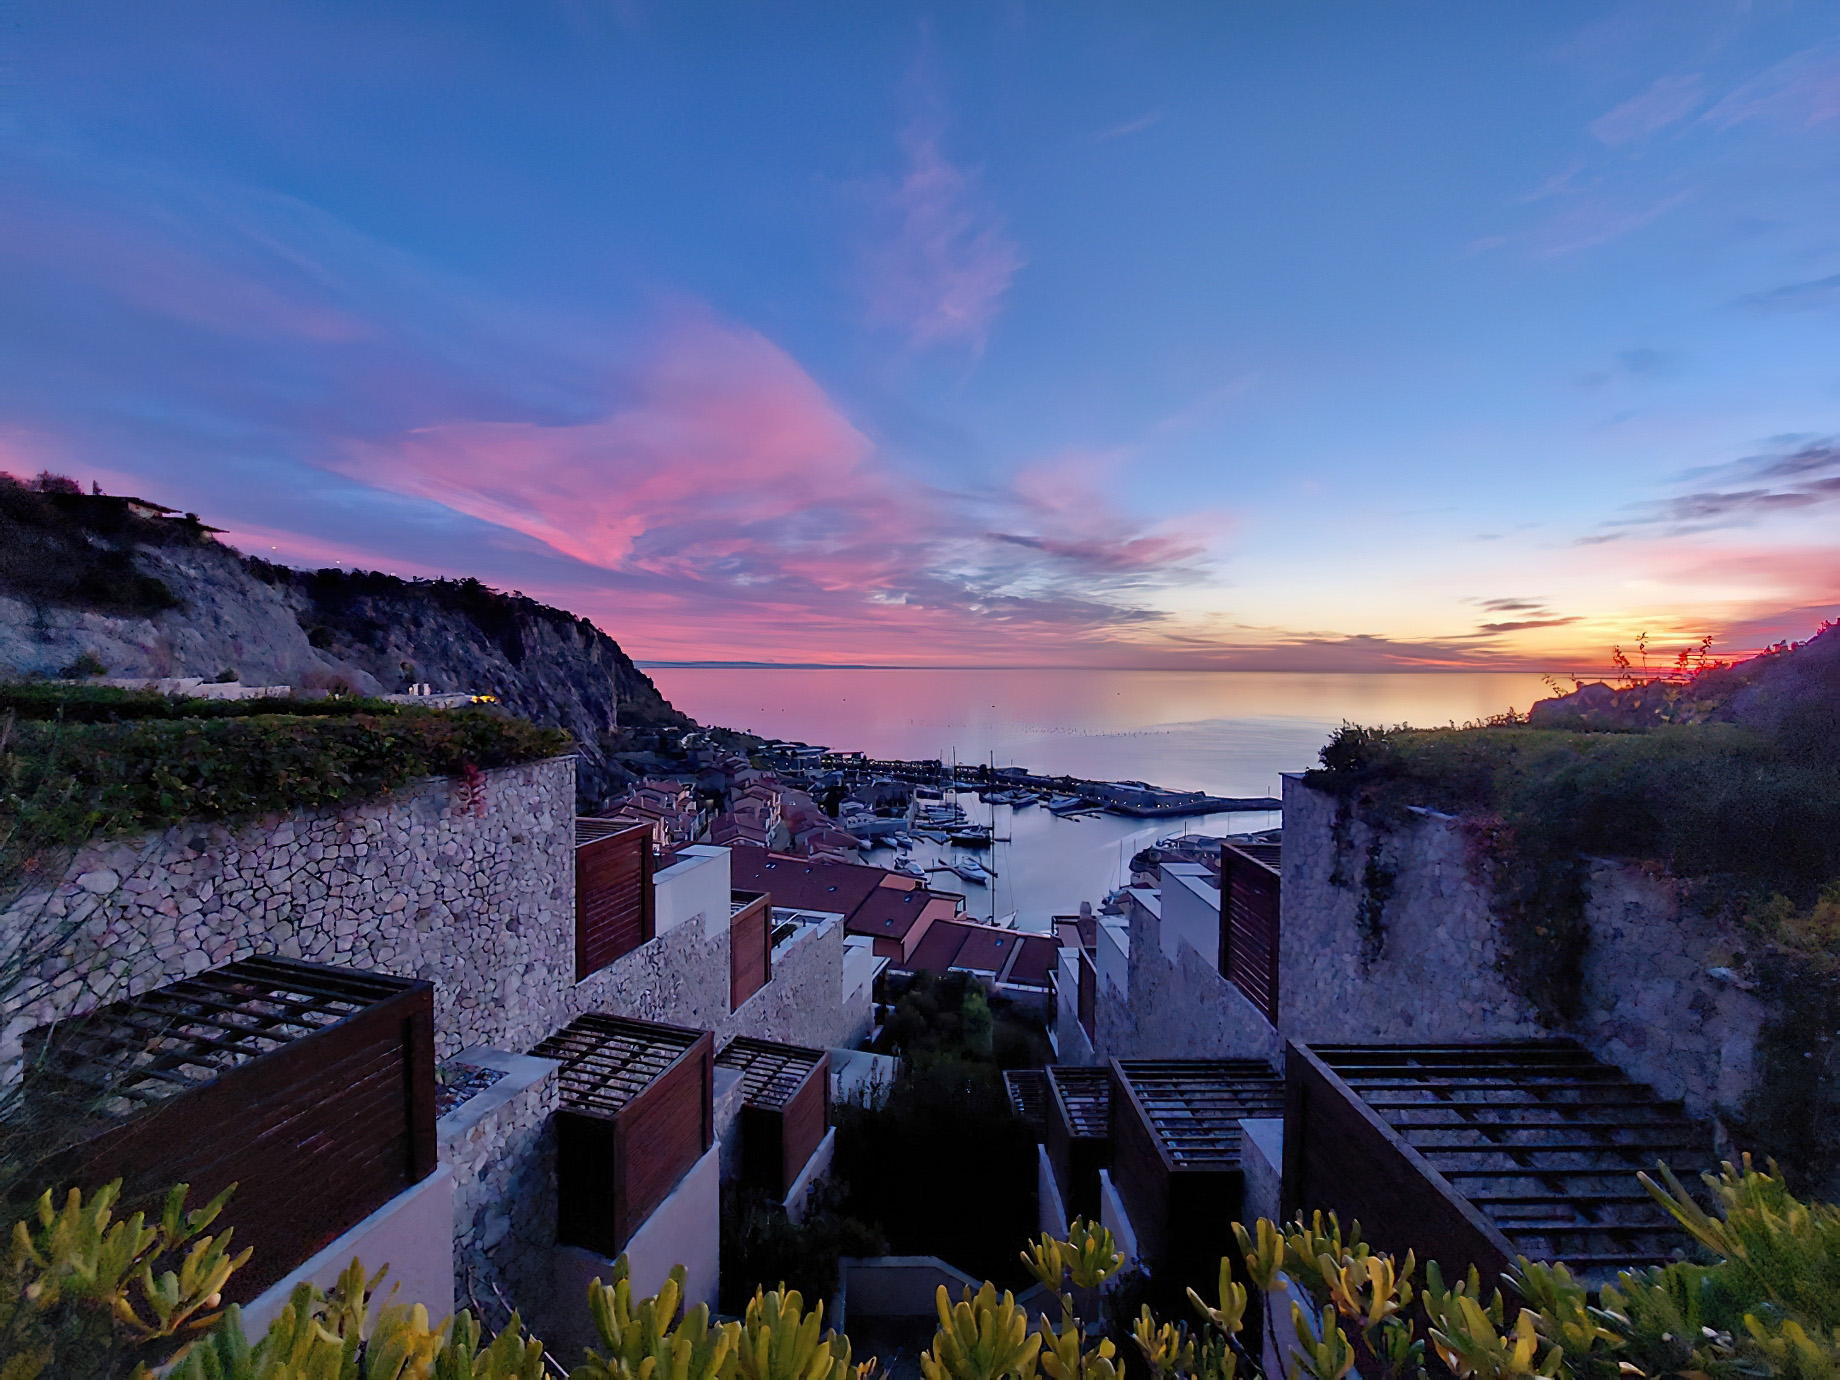 Tivoli Portopiccolo Sistiana Resort & Spa – Sistiana, Italy – Ocean View Sunset